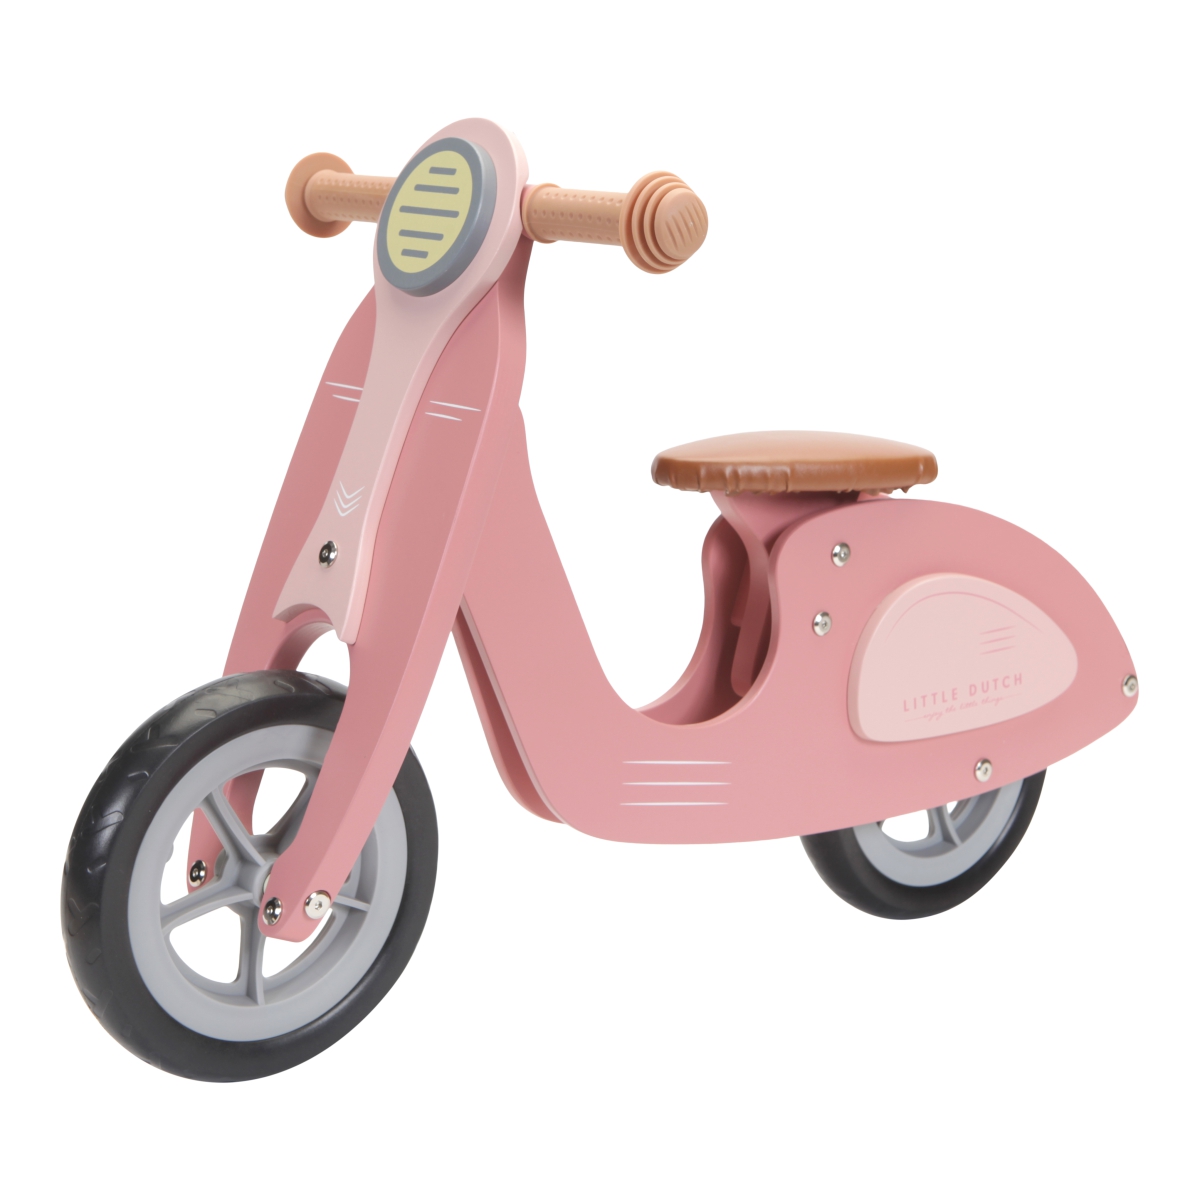 Little Dutch LD7003 scooter pink 2